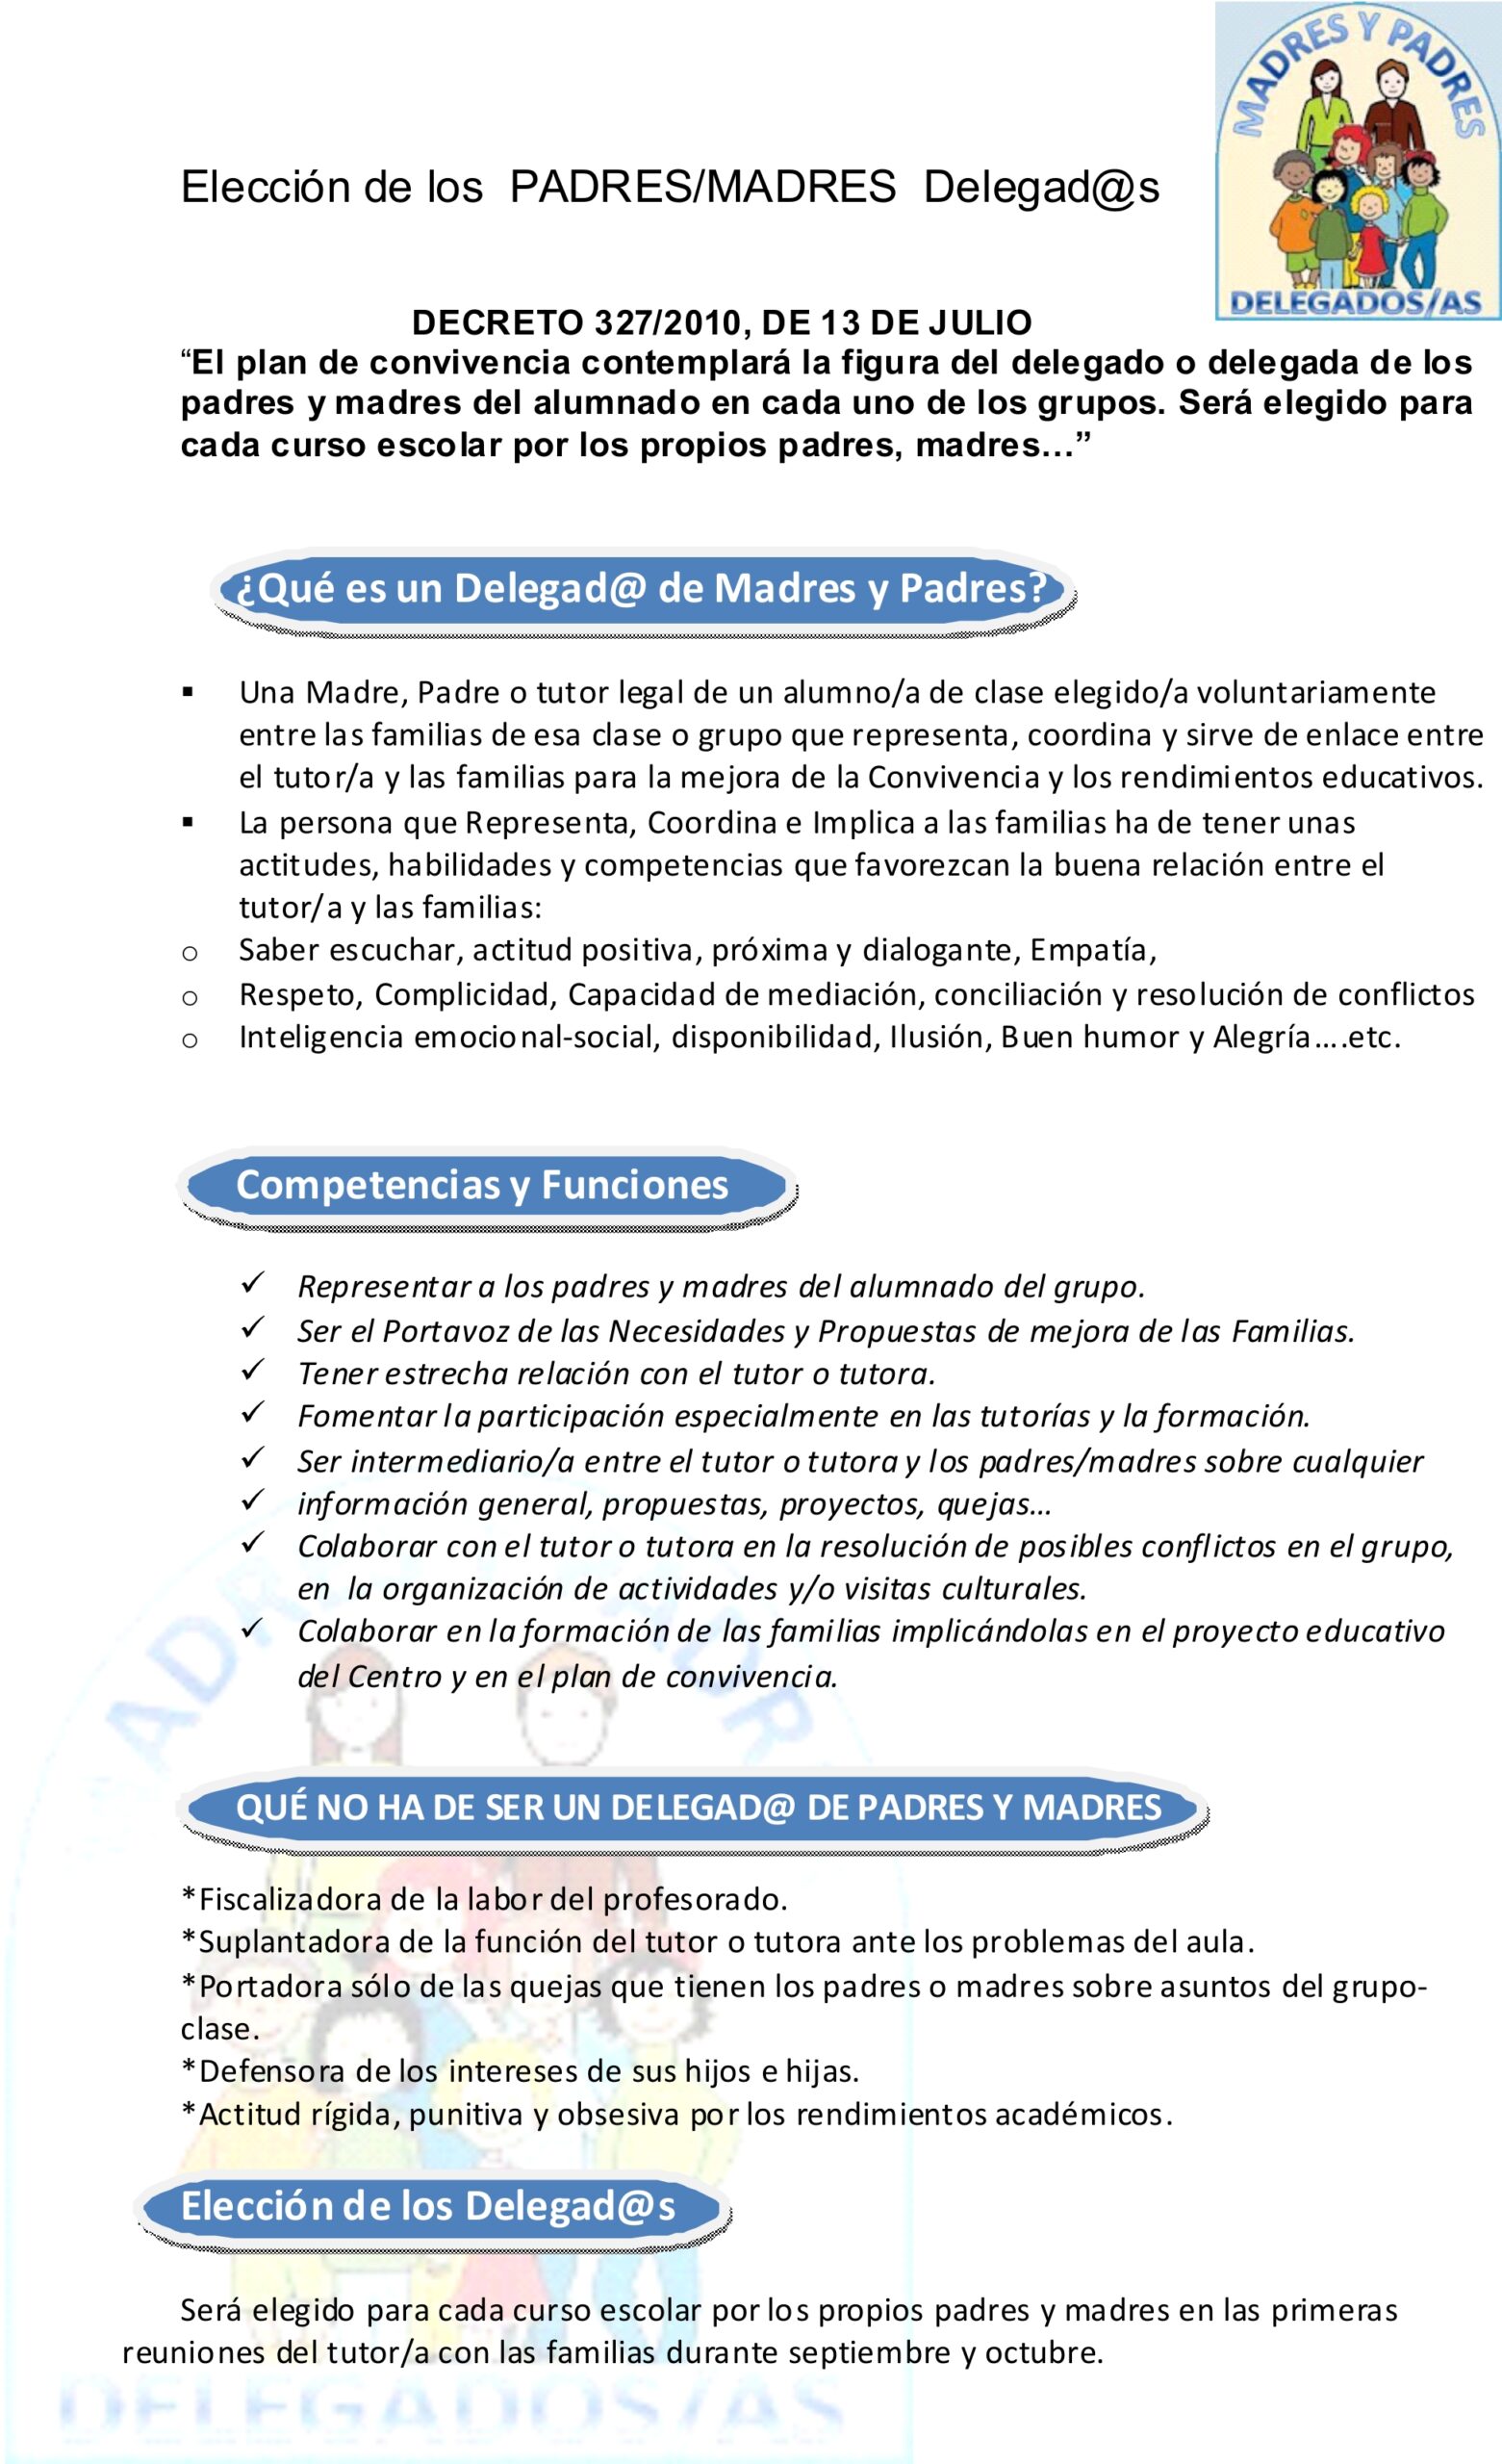 ELECCIÓN DE PADRES/MADRES DELEGADOS